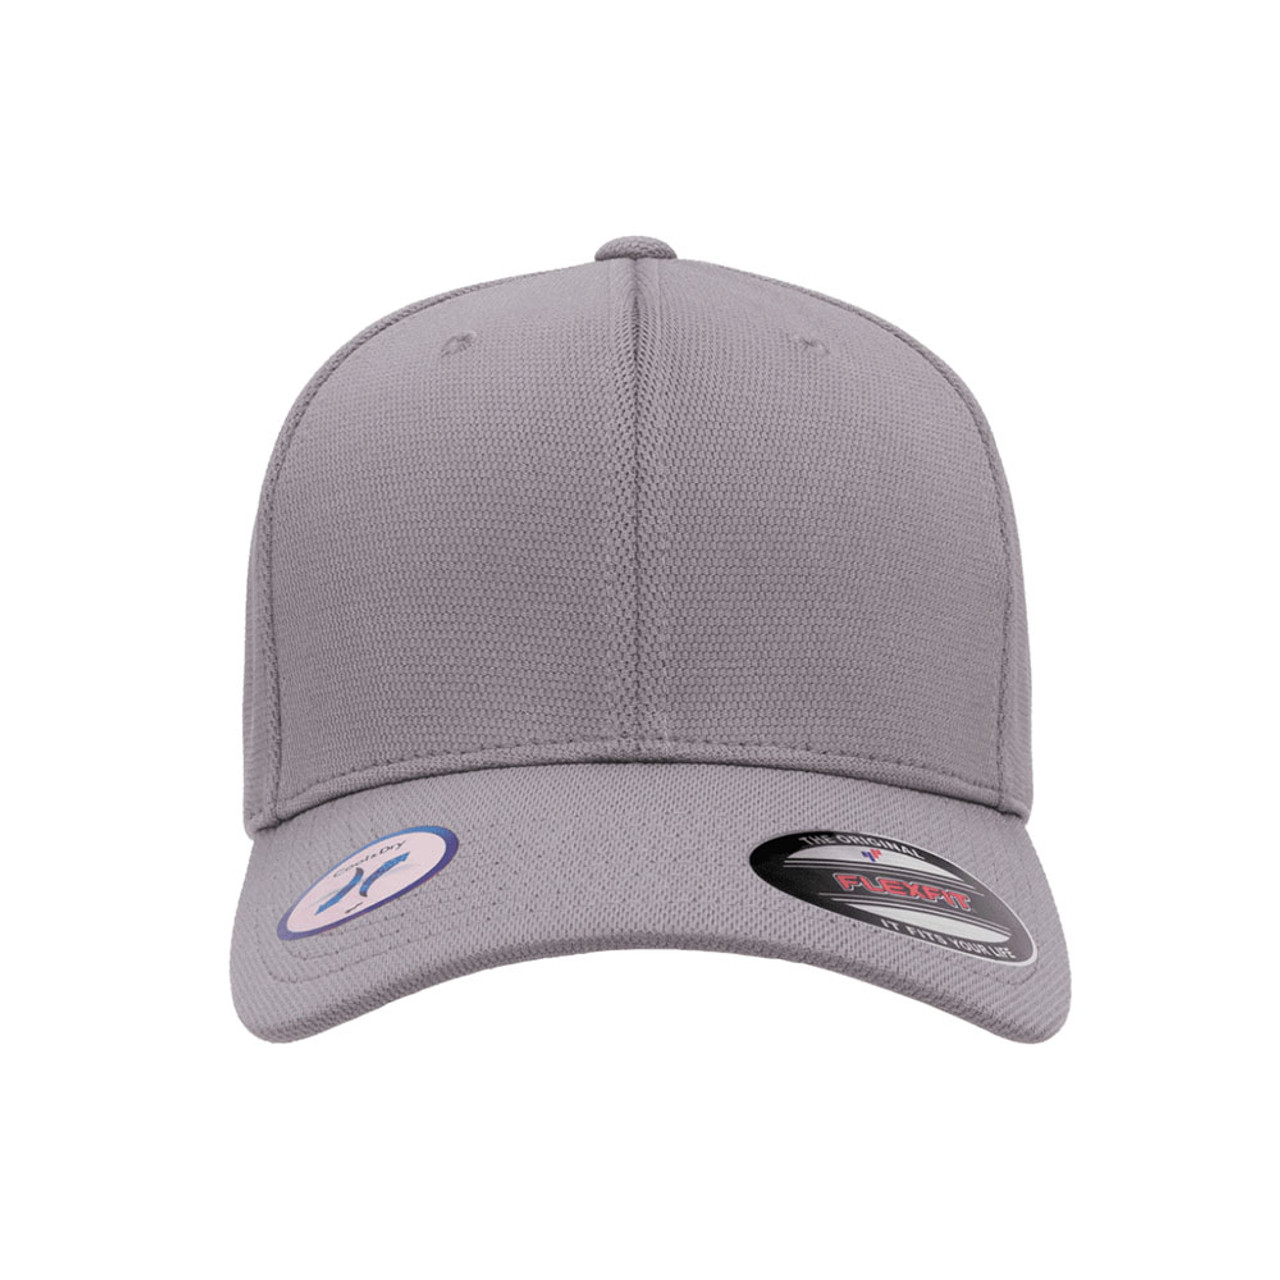 Flexfit Cap - Cool The Jac One Dry & Performance | Dozen Hat